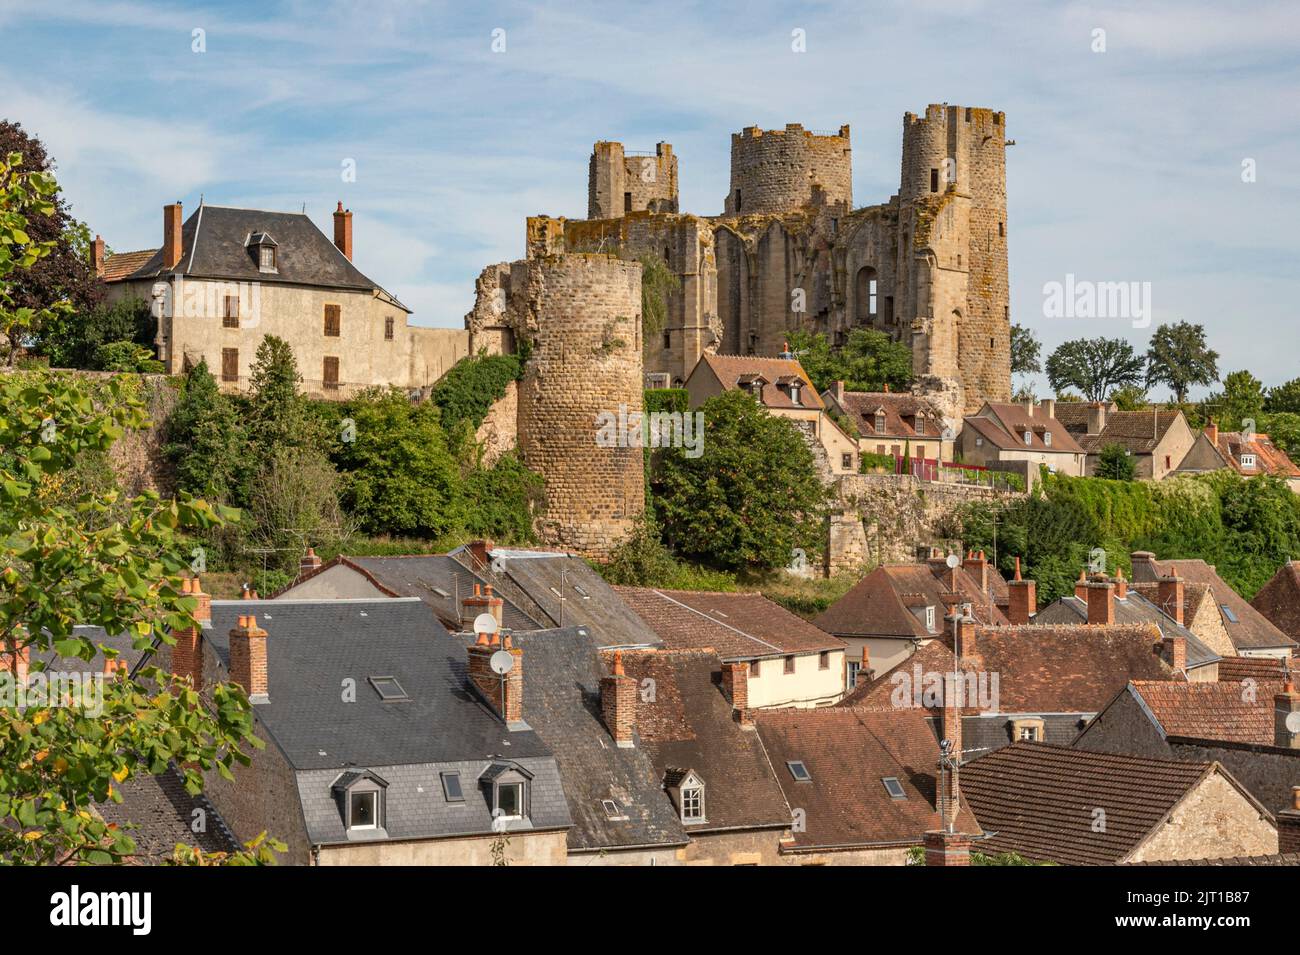 Una vez una impresionante fortaleza con 15 torres, sólo 3 torres sobrevivieron y hoy dominan el horizonte de Bourbon-l'Archambault en Allier, Francia Foto de stock